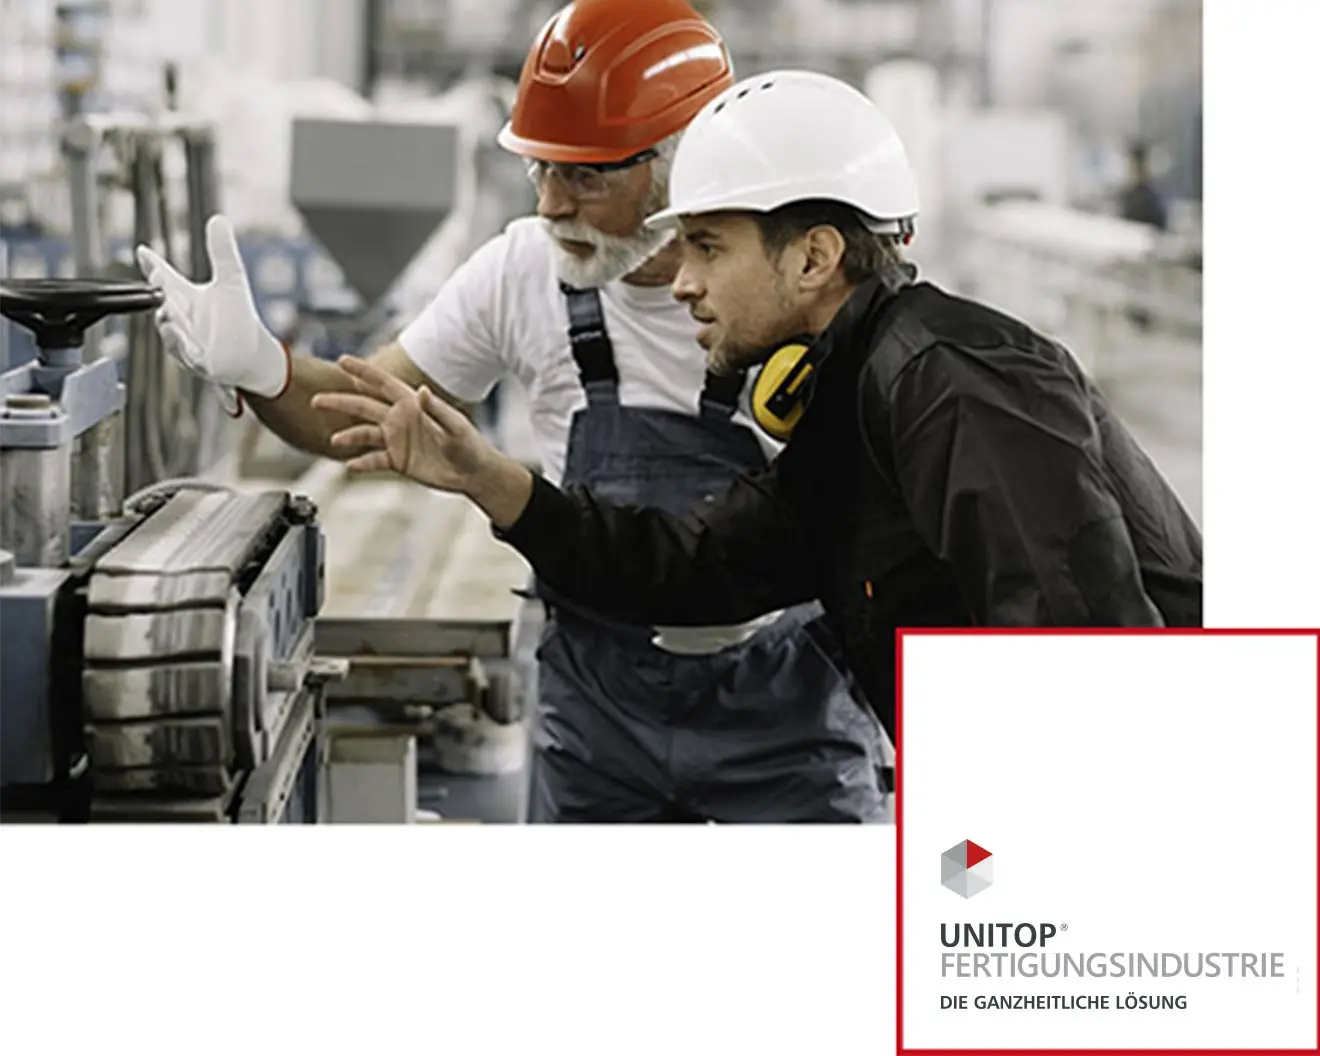 Zwei Fabrikarbeiter mit Helmen, die in einem fertigungsindustriellen Umfeld an einer Maschine zur Metallverarbeitung den Prozess besprechen. Neben dem Bild ist das unitop-Fertigungsindustrie-Logo zu sehen.